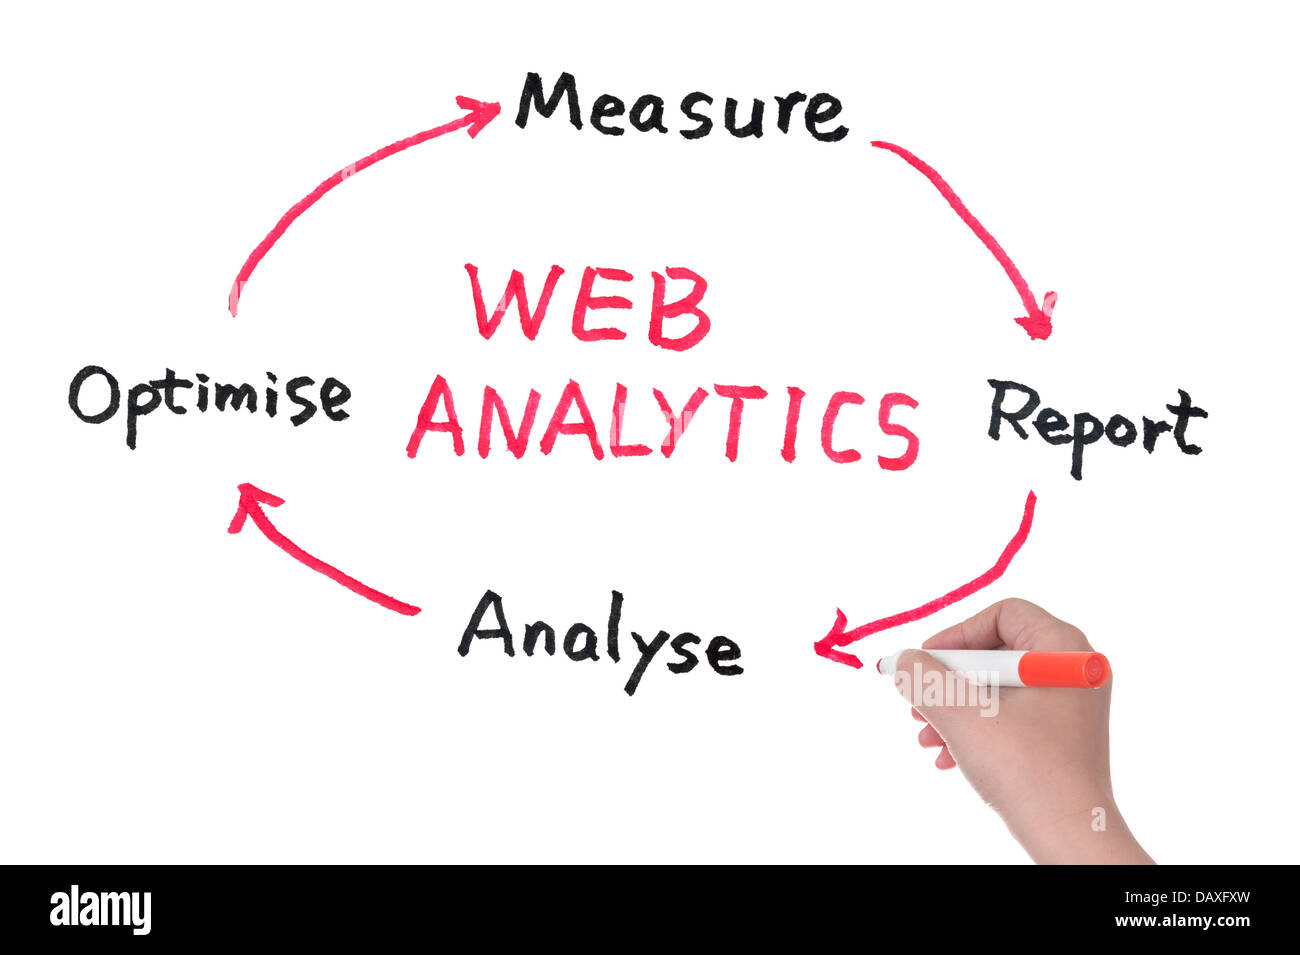 Web analytics el diagrama dibujado en una pizarra blanca Foto de stock